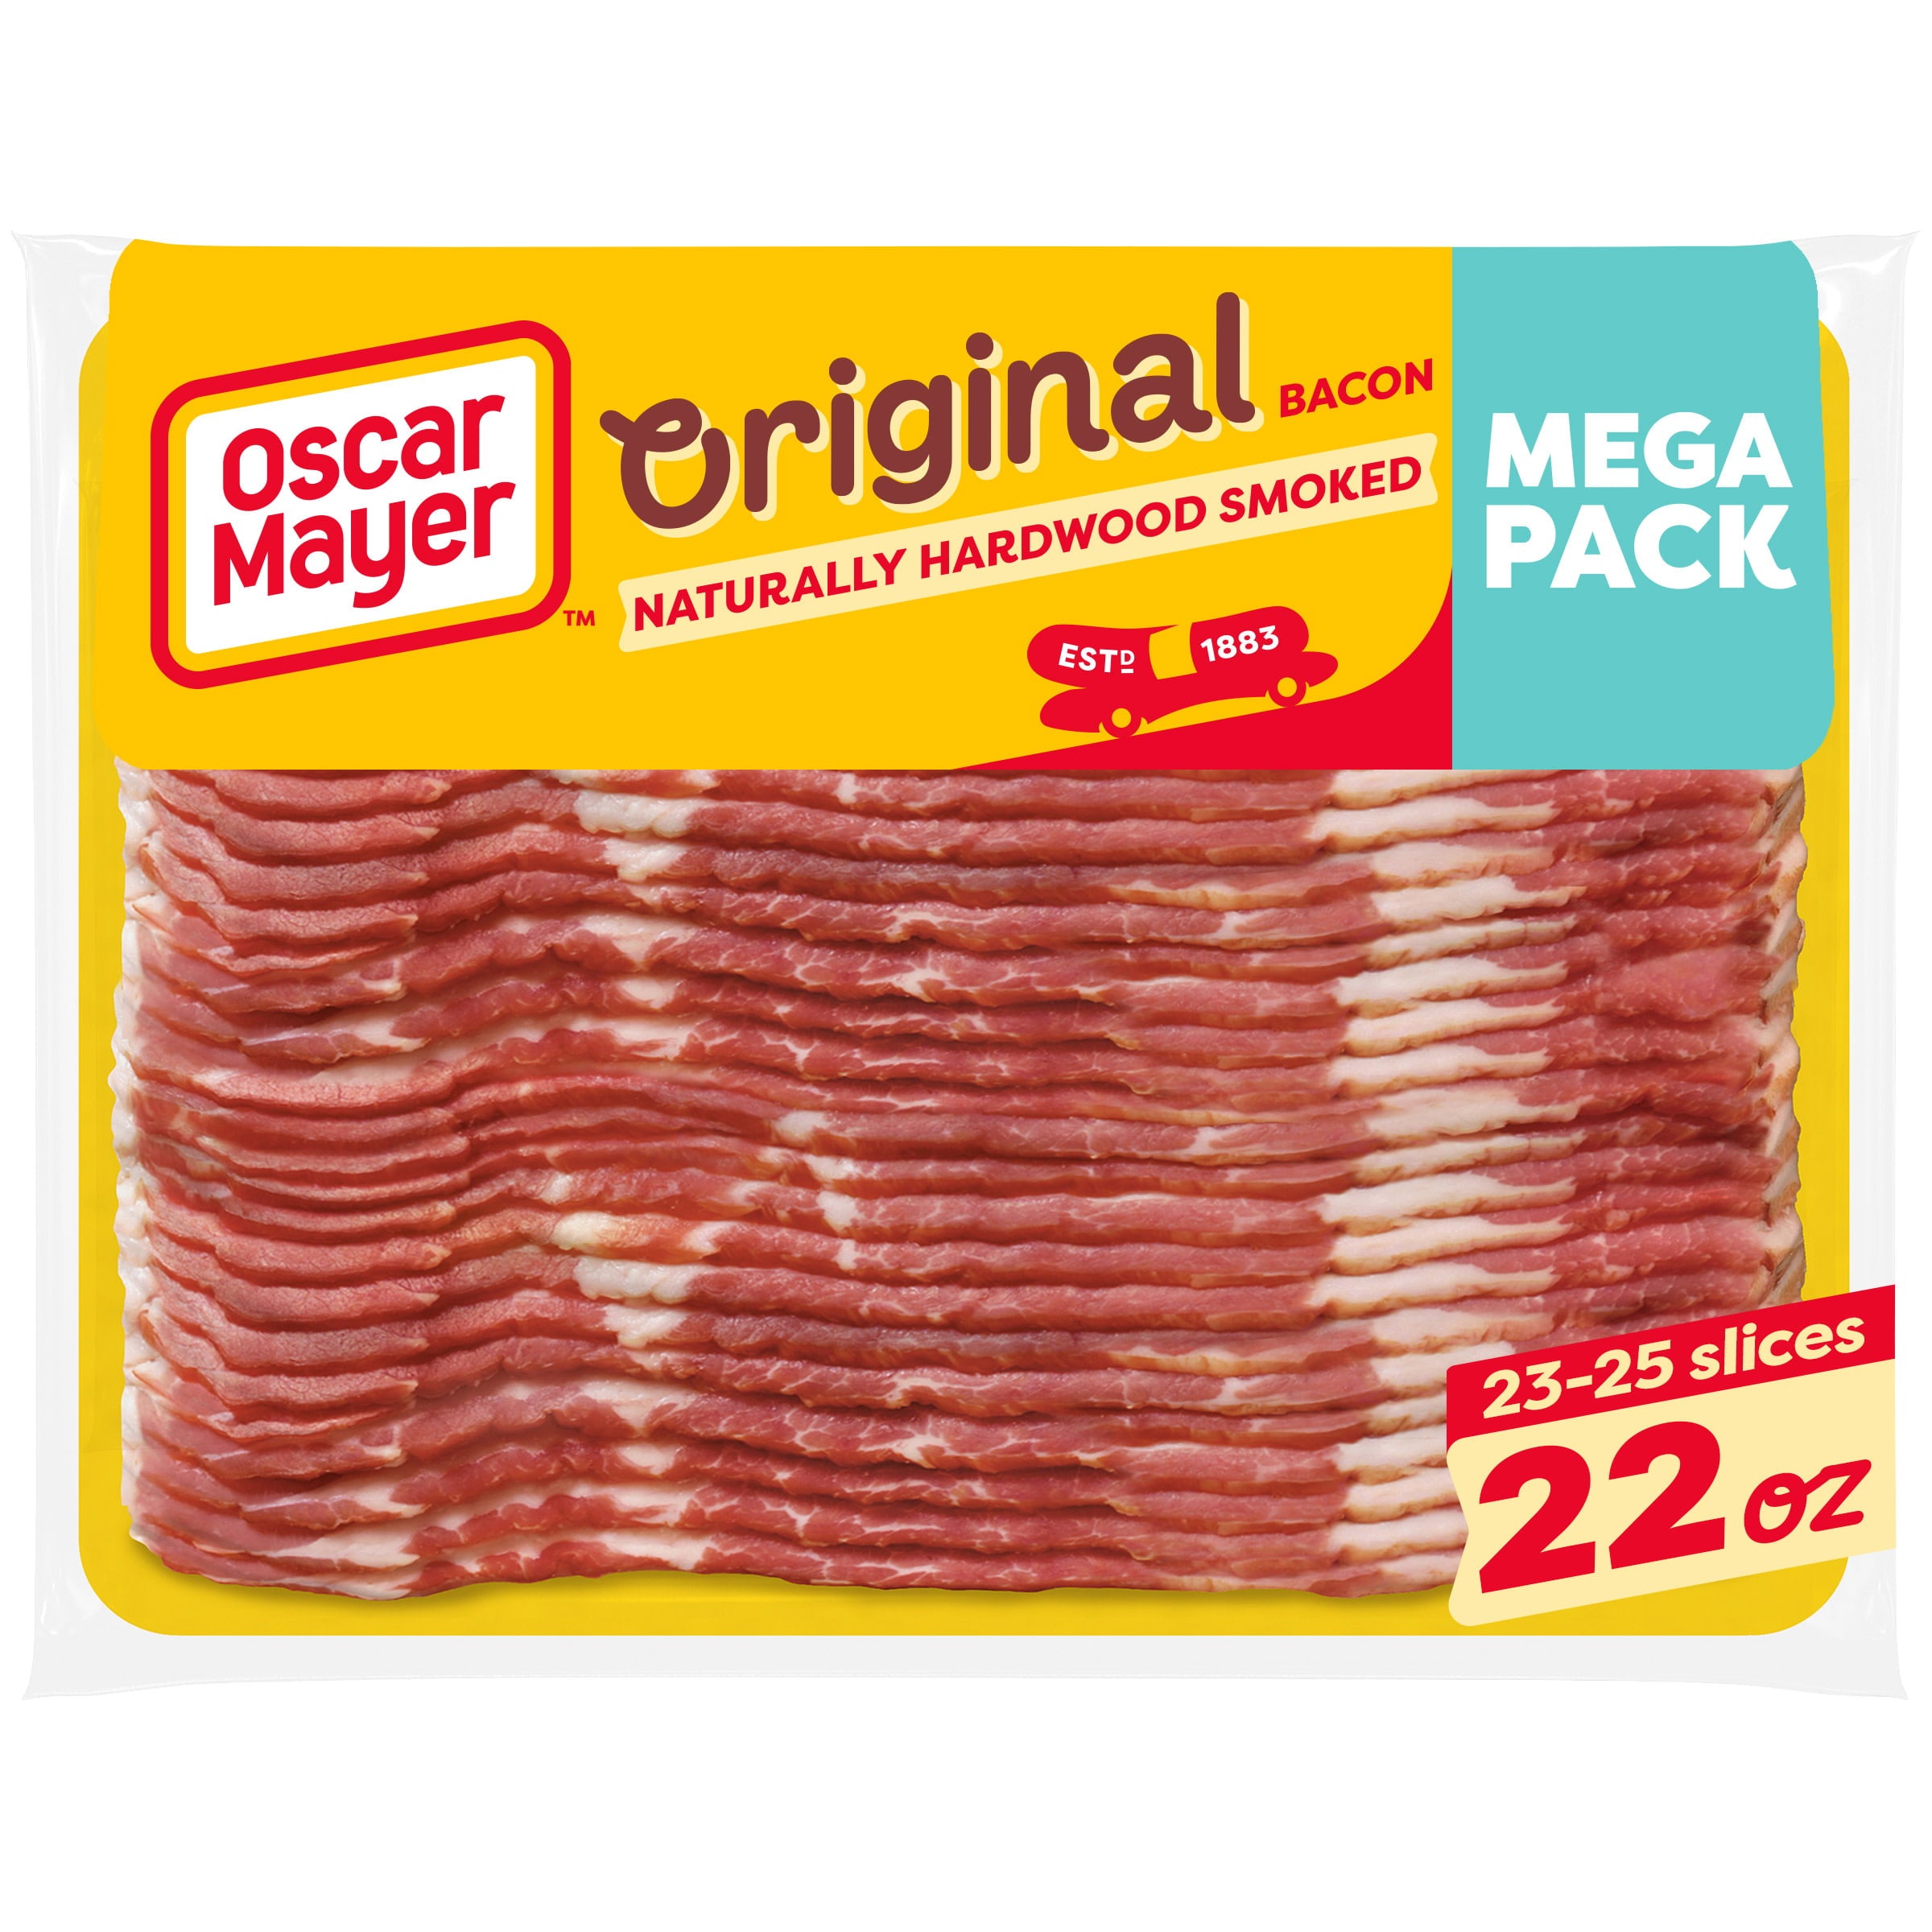 Oscar Mayer Original Bacon Naturally Hardwood Smoked Mega Pack, 22 oz Pack